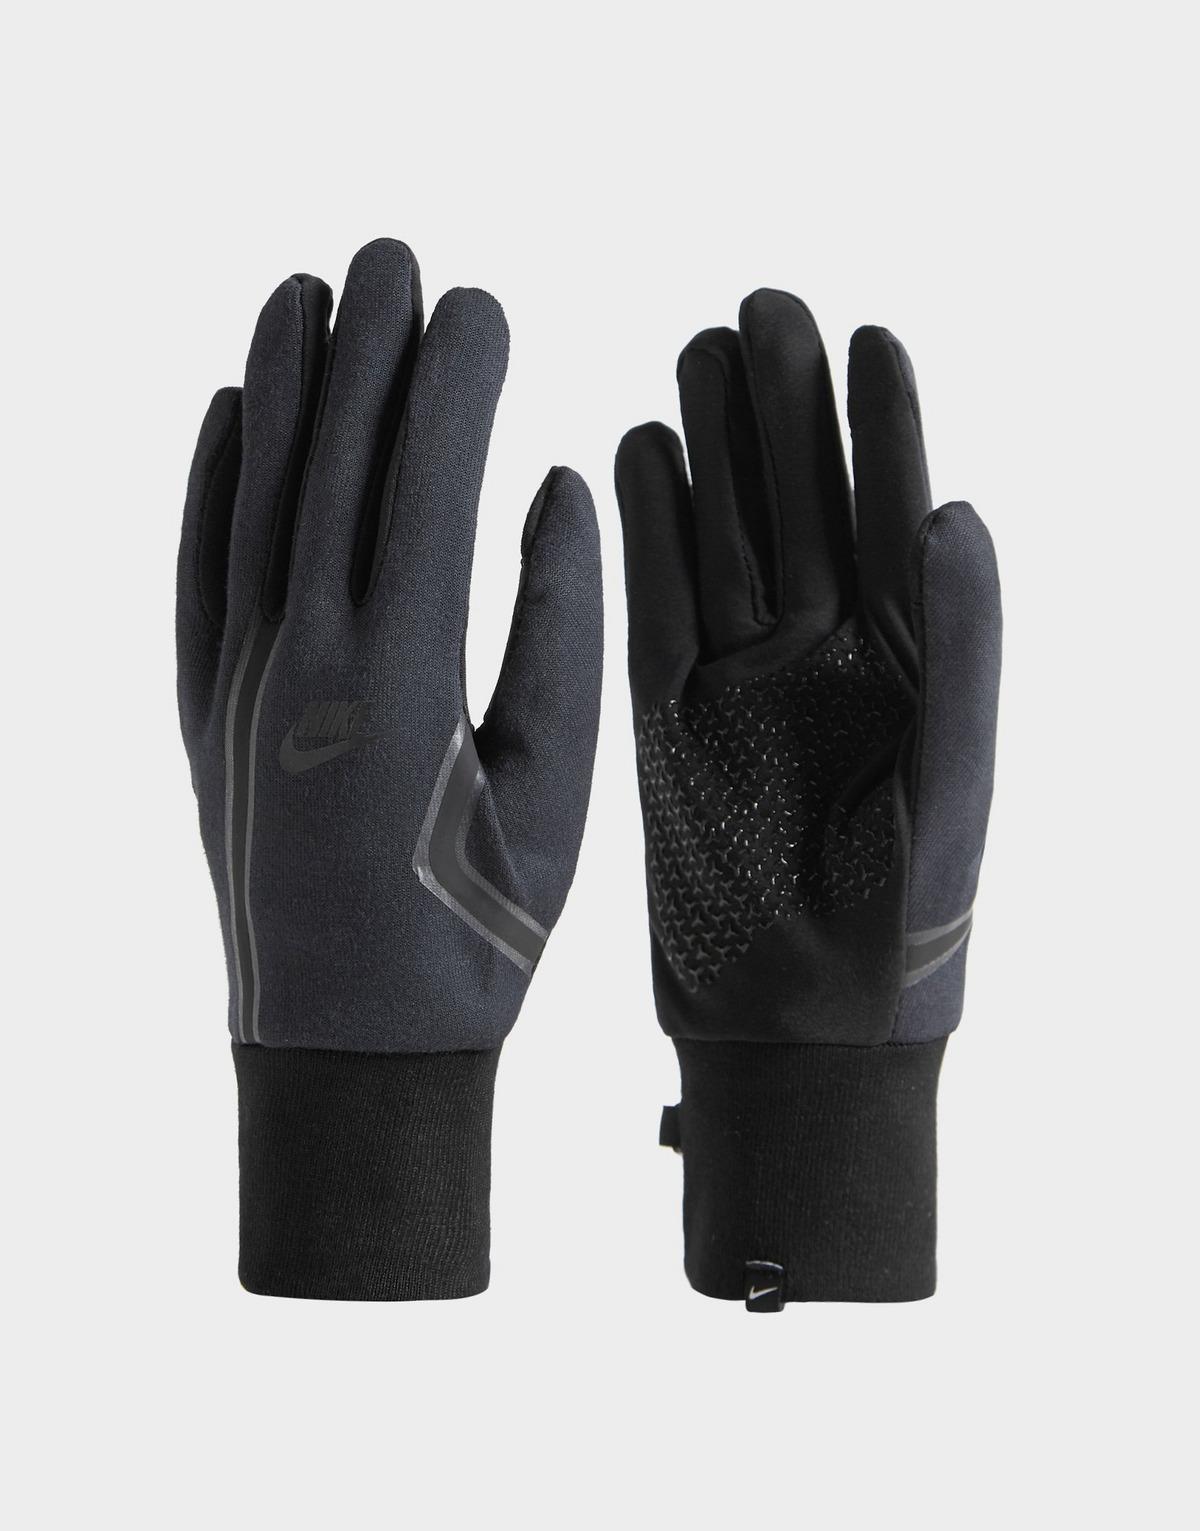 Nike Tech Fleece Gloves (black) for Men - Save 17% - Lyst